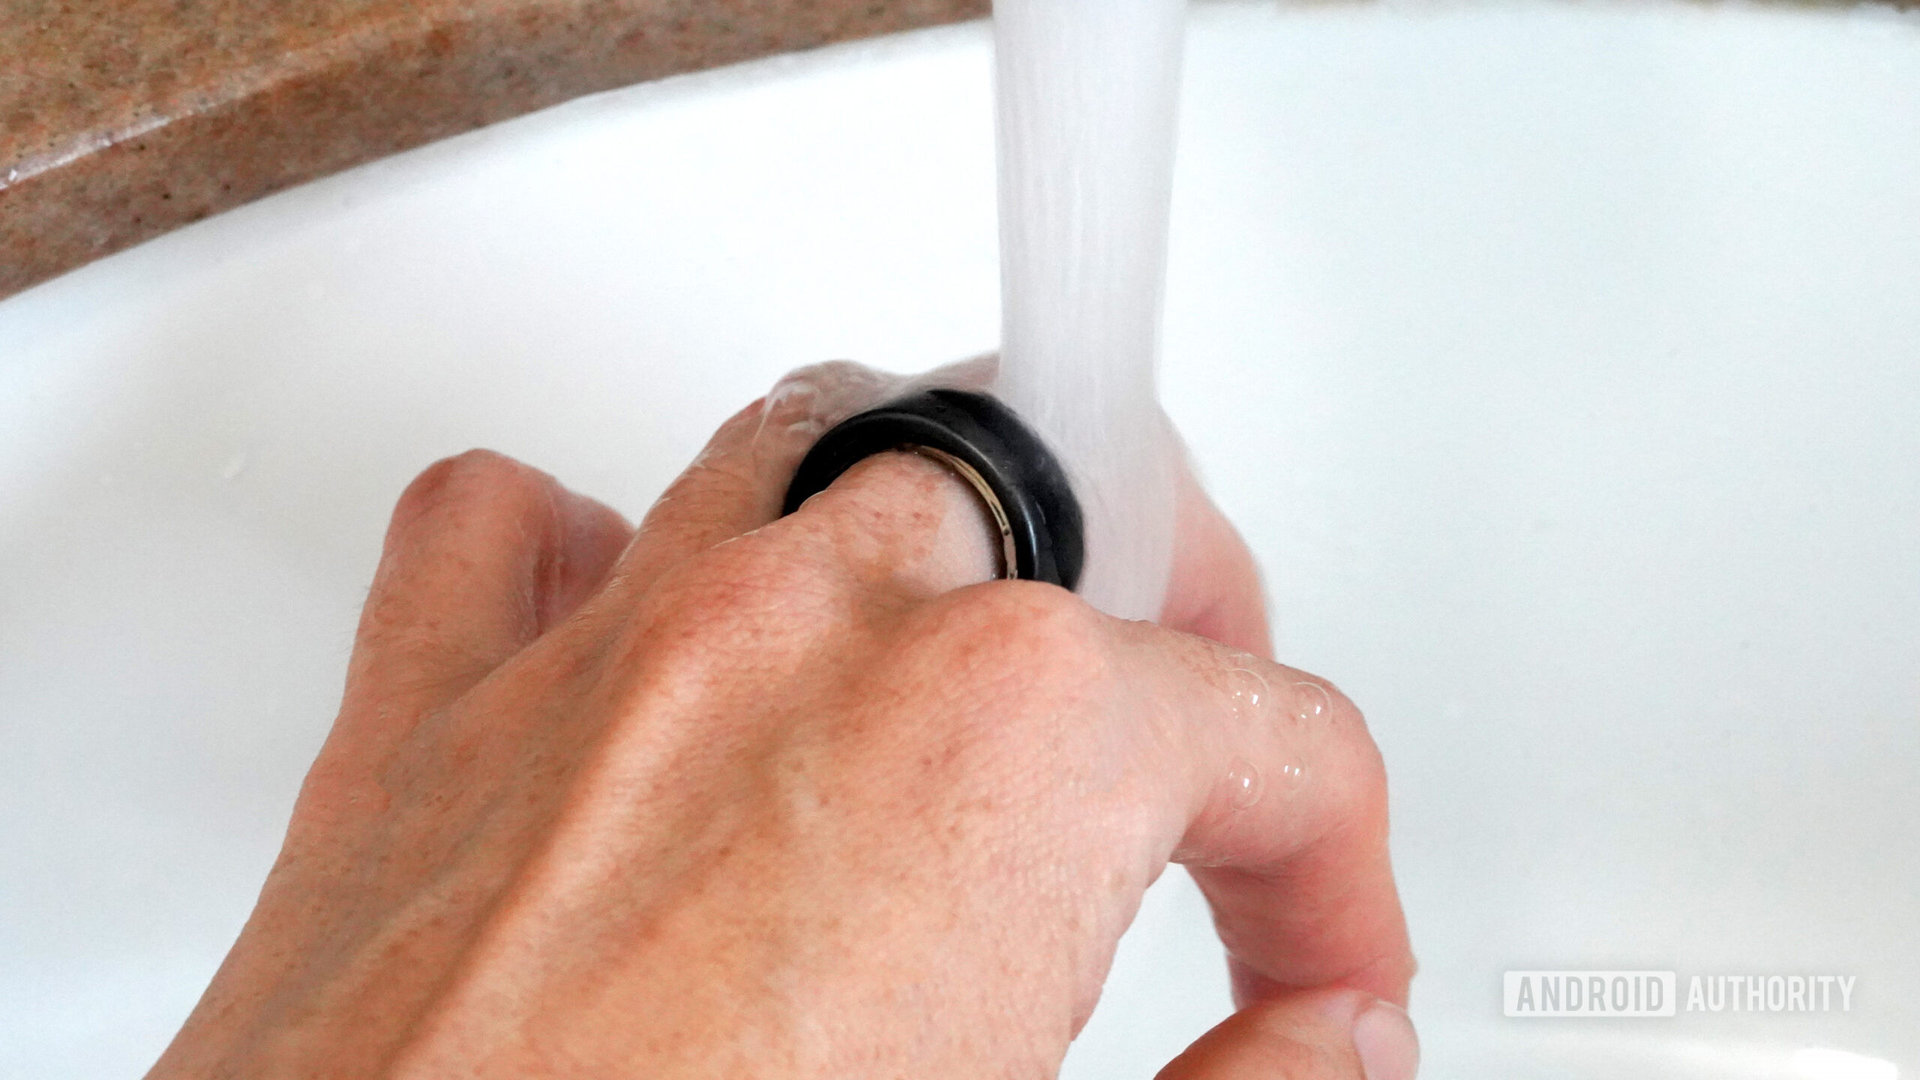 Bir Oura Ring 3 kullanıcısı cihaz açıkken ellerini yıkıyor.